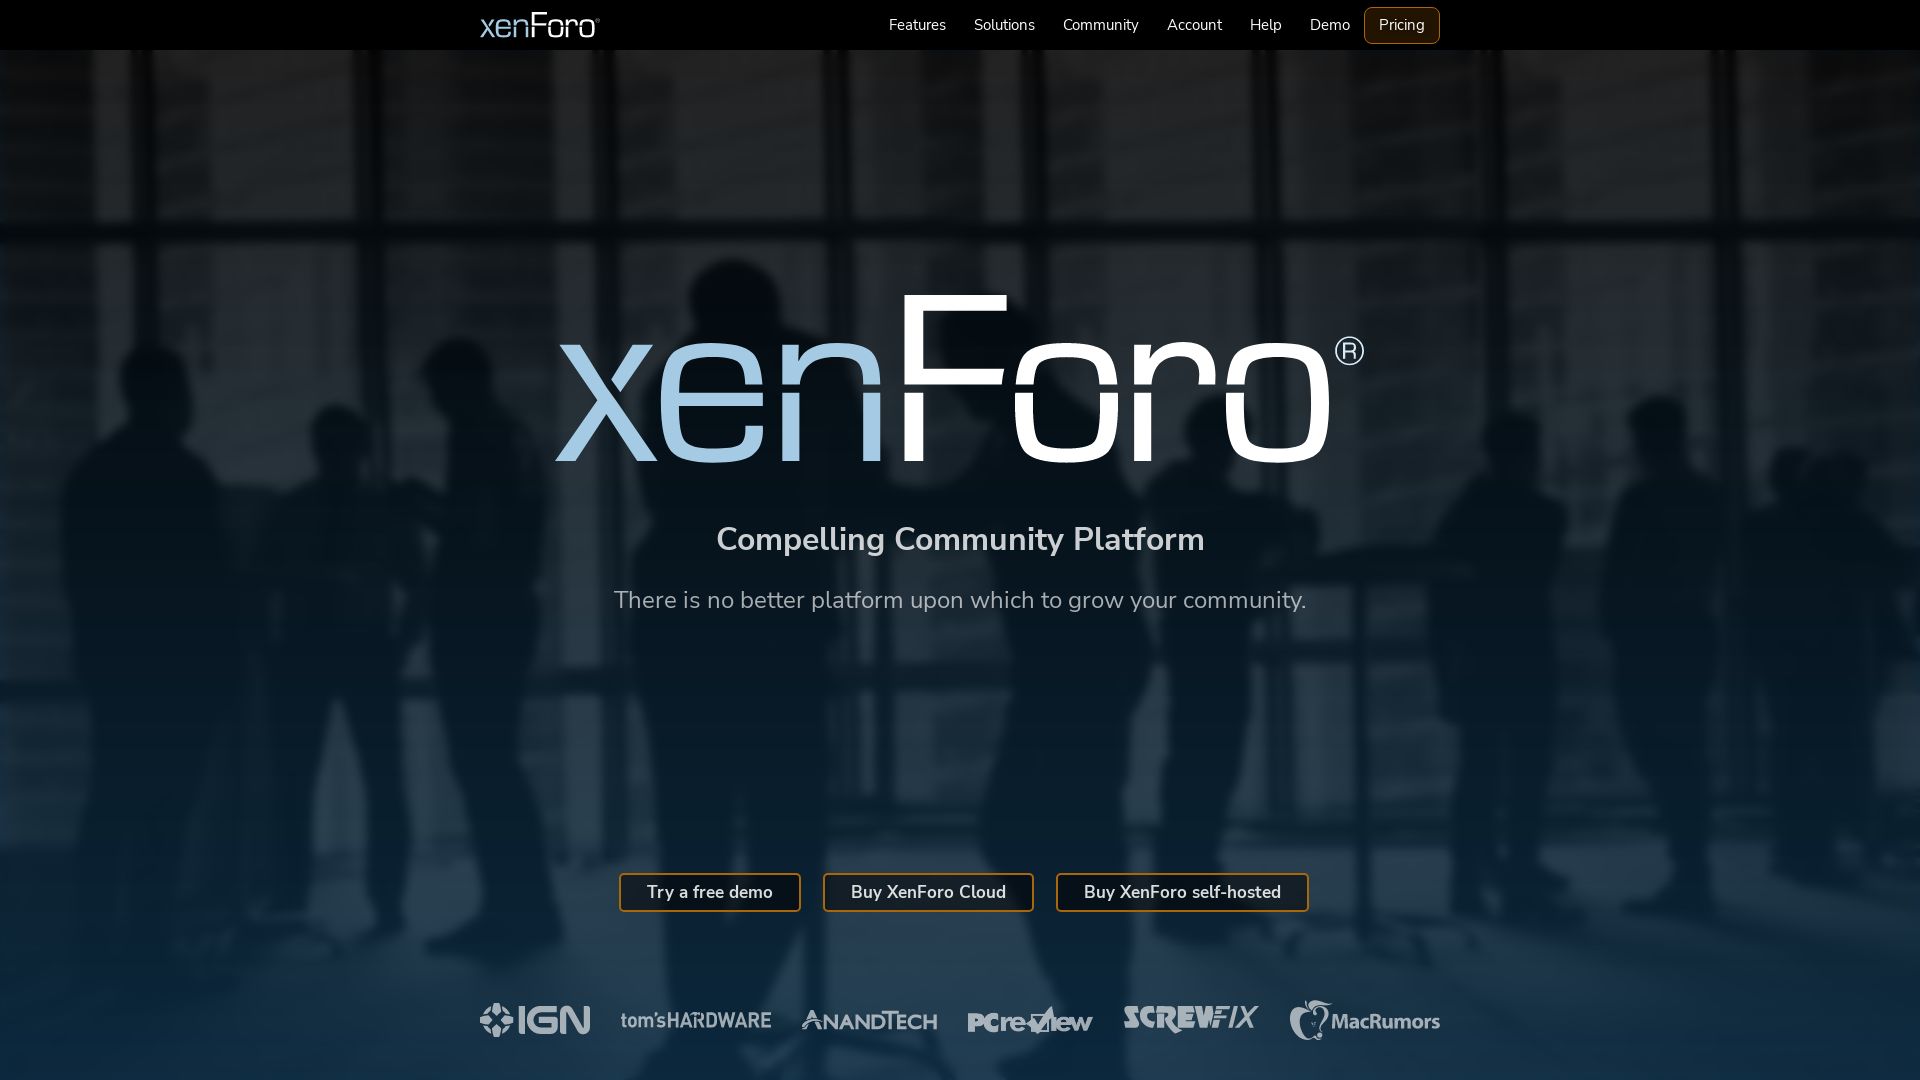 Stato del sito web xenforo.com è   ONLINE